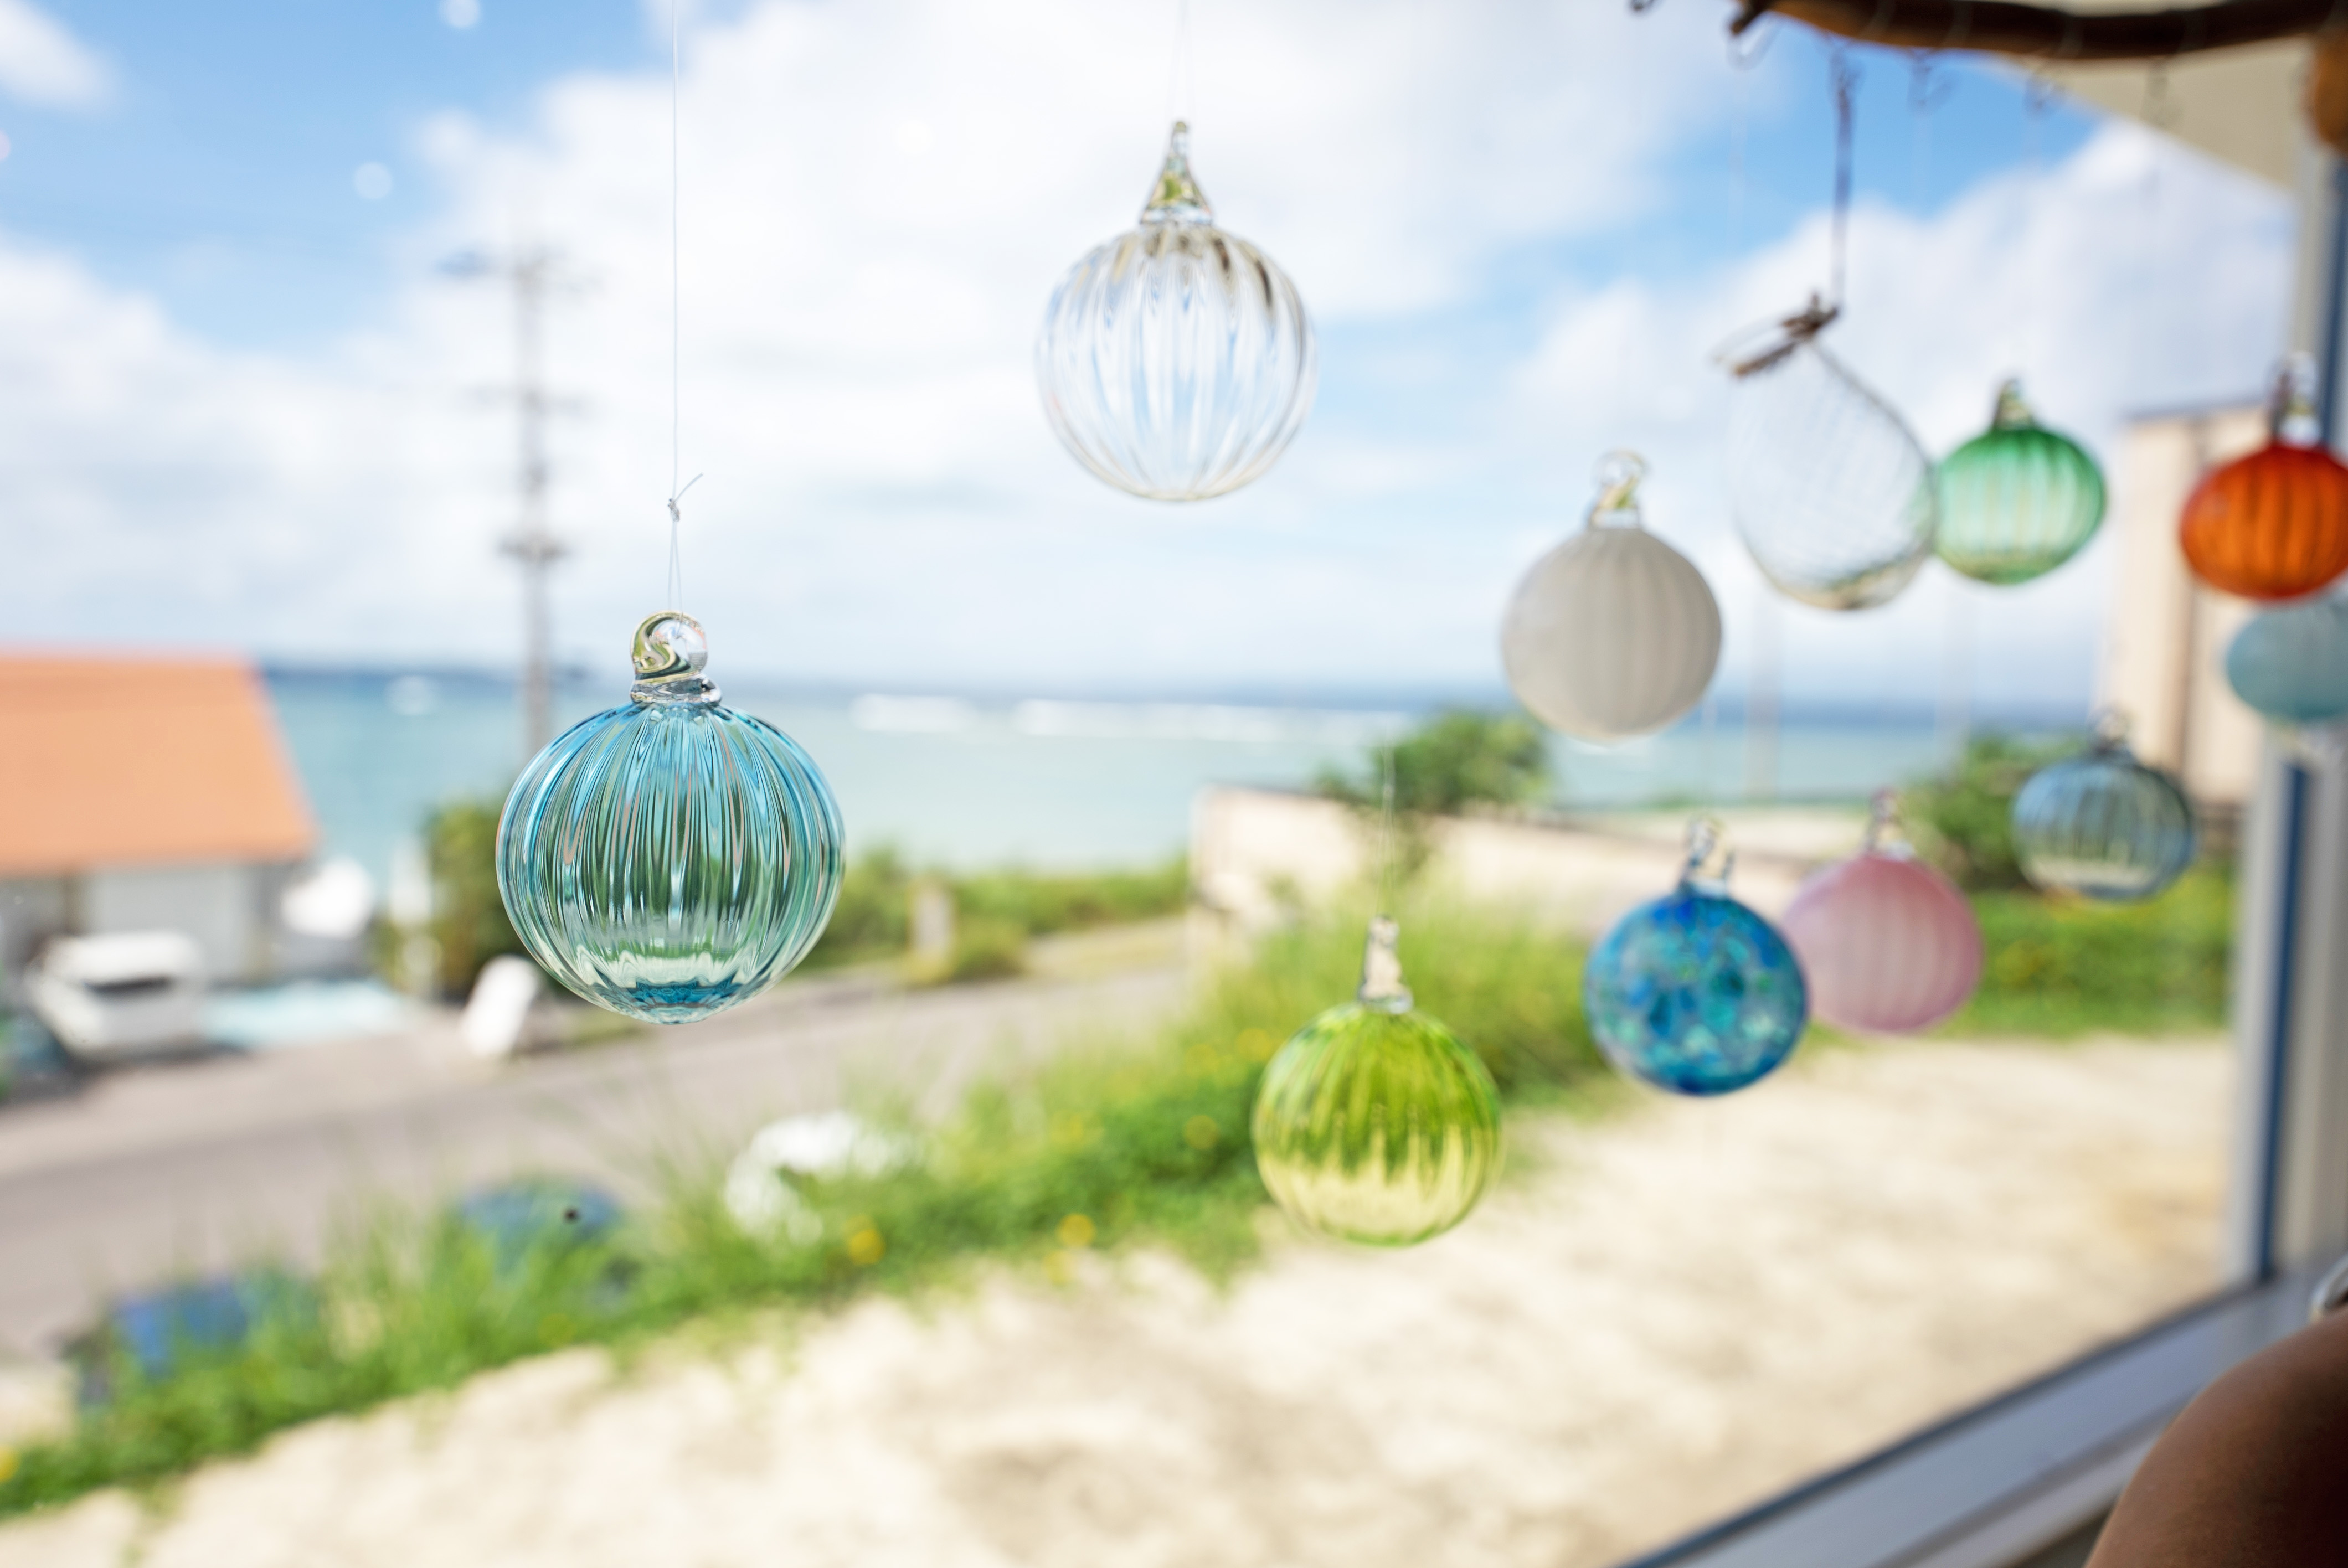 石垣島の美ら海を望むハイセンスな工房。「ジェルキャンドル作成」など、子どもでも楽しめるメニューもそろう 